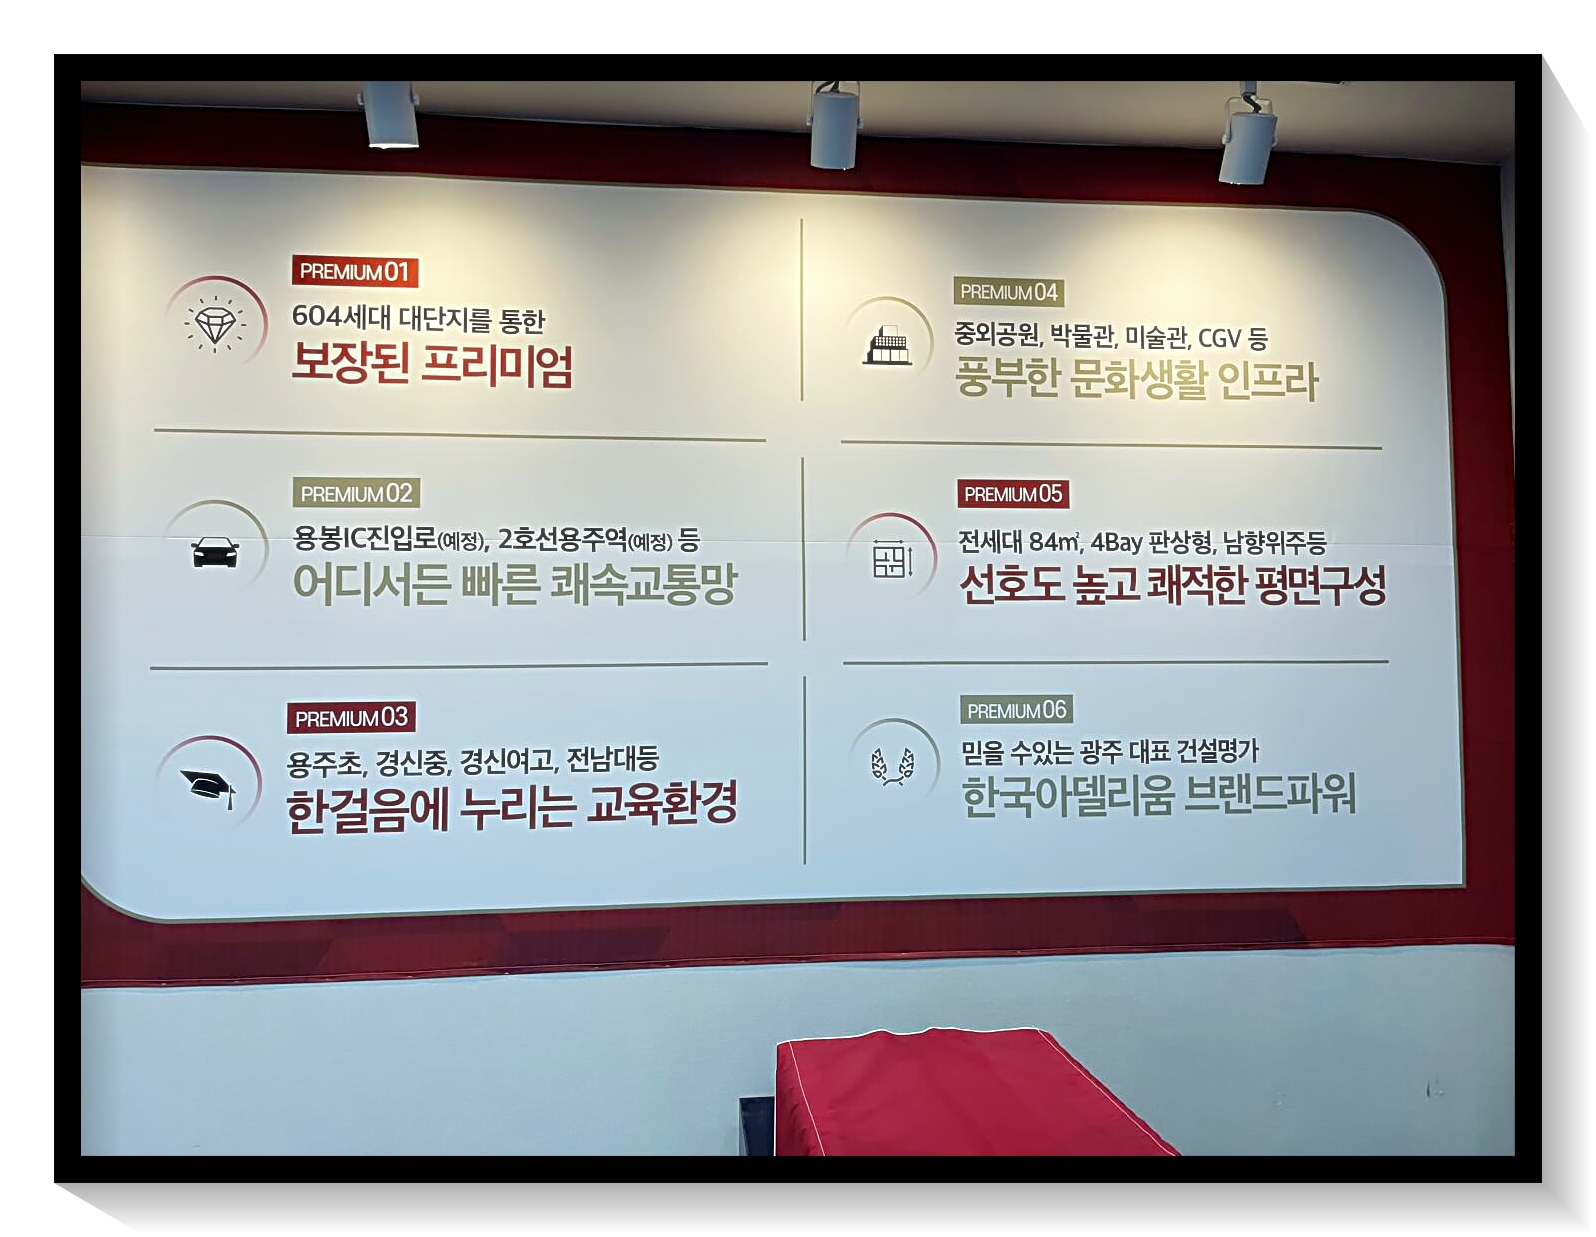 아델리움 비엔날레 용봉동 한국아델리움 프리미엄 소개하는 사진